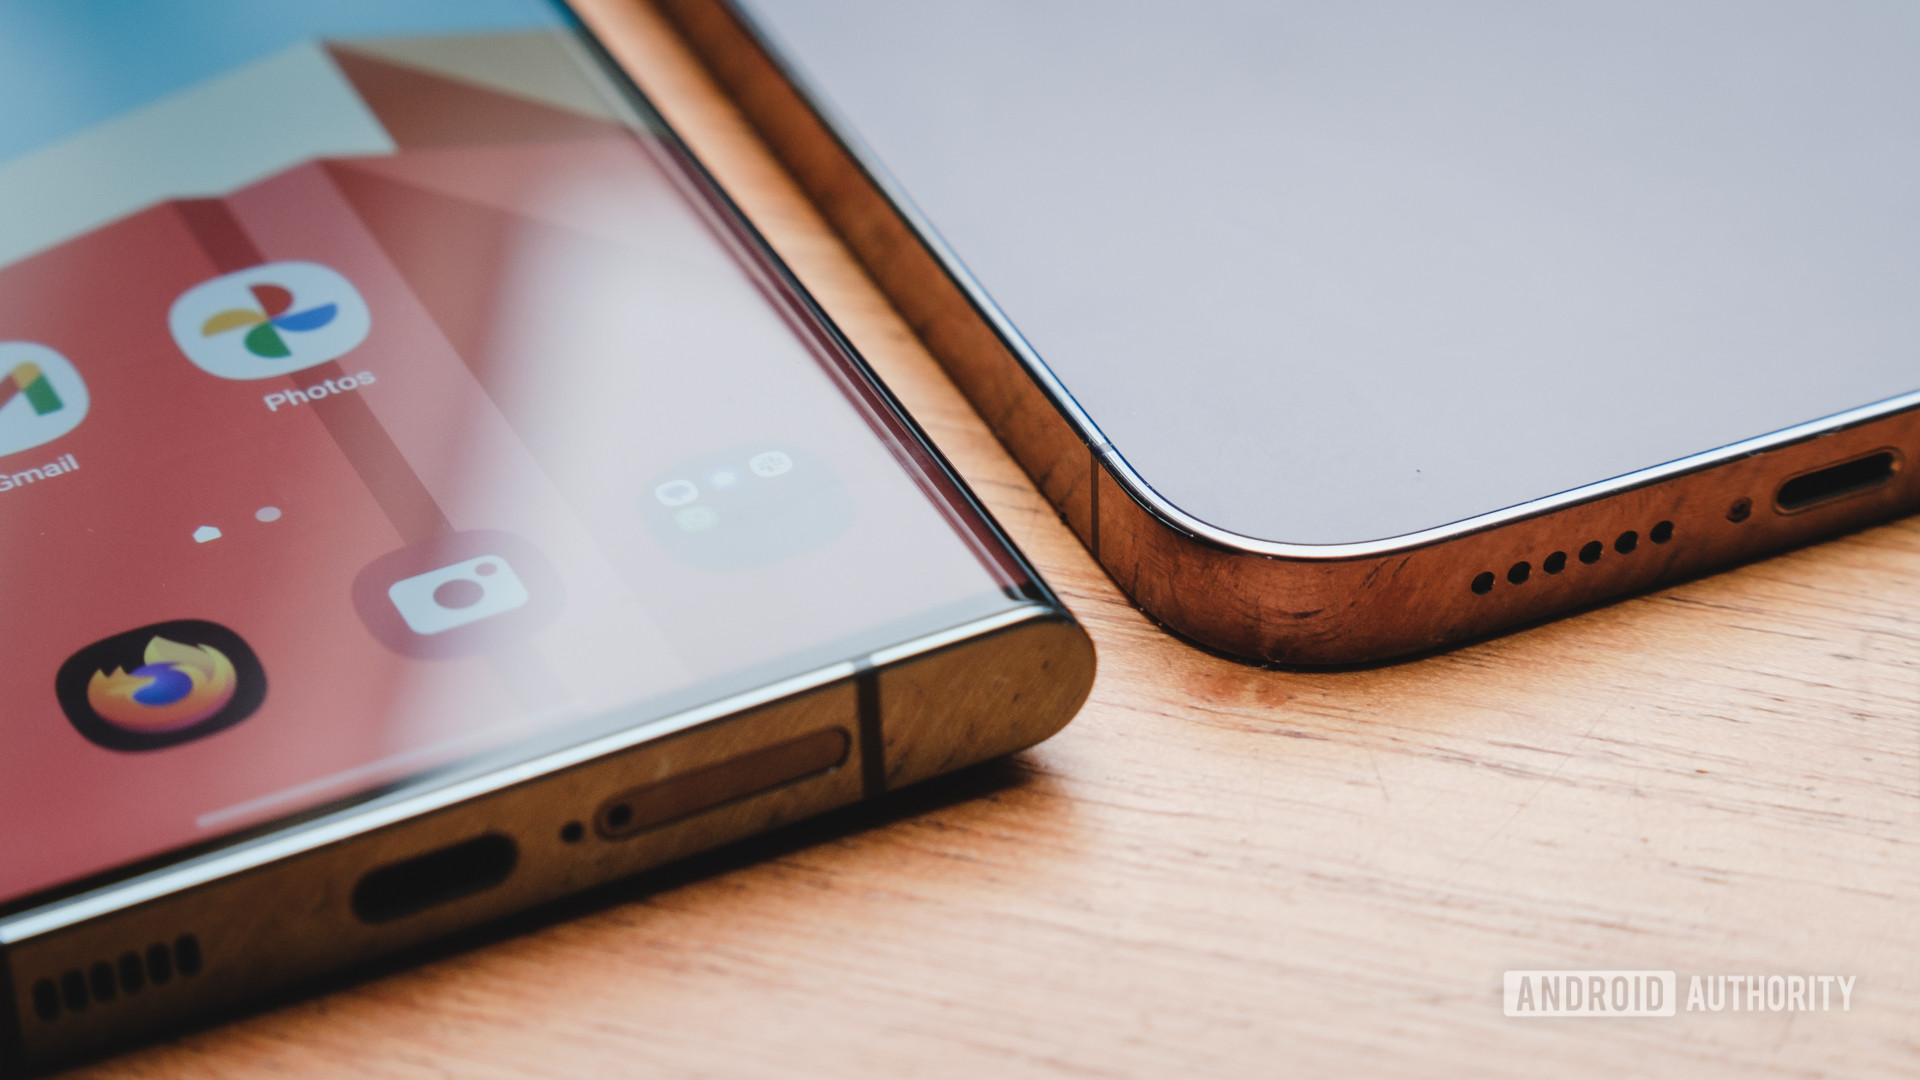 Flache vs. gebogene Glas-Smartphones